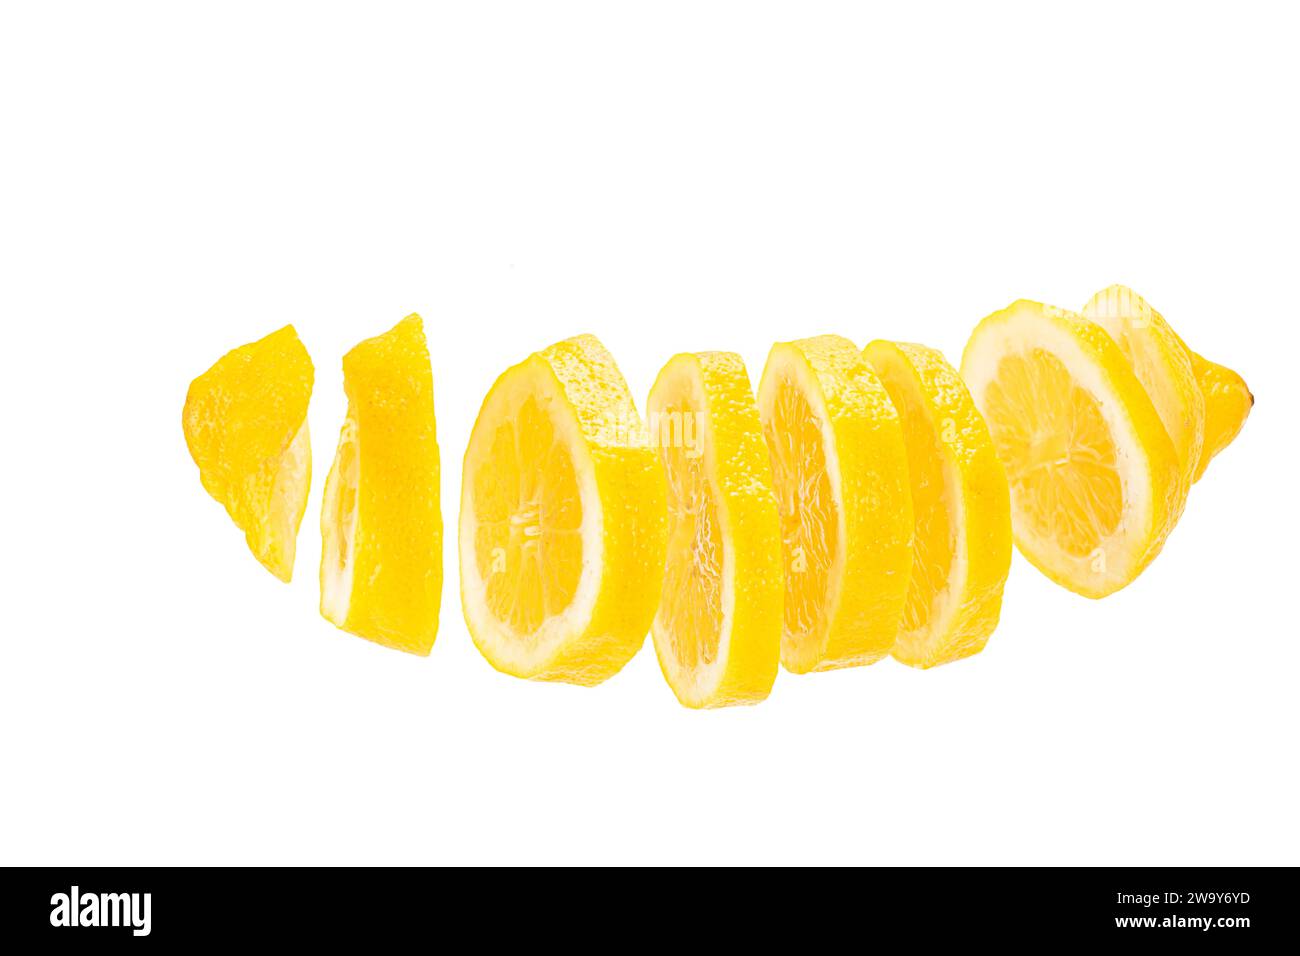 Zitrone in Scheiben geschnitten und frei schwebend vor weißem Hintergrund. A lemon cut in slices and placed in a row before a white backdrop Stock Photo